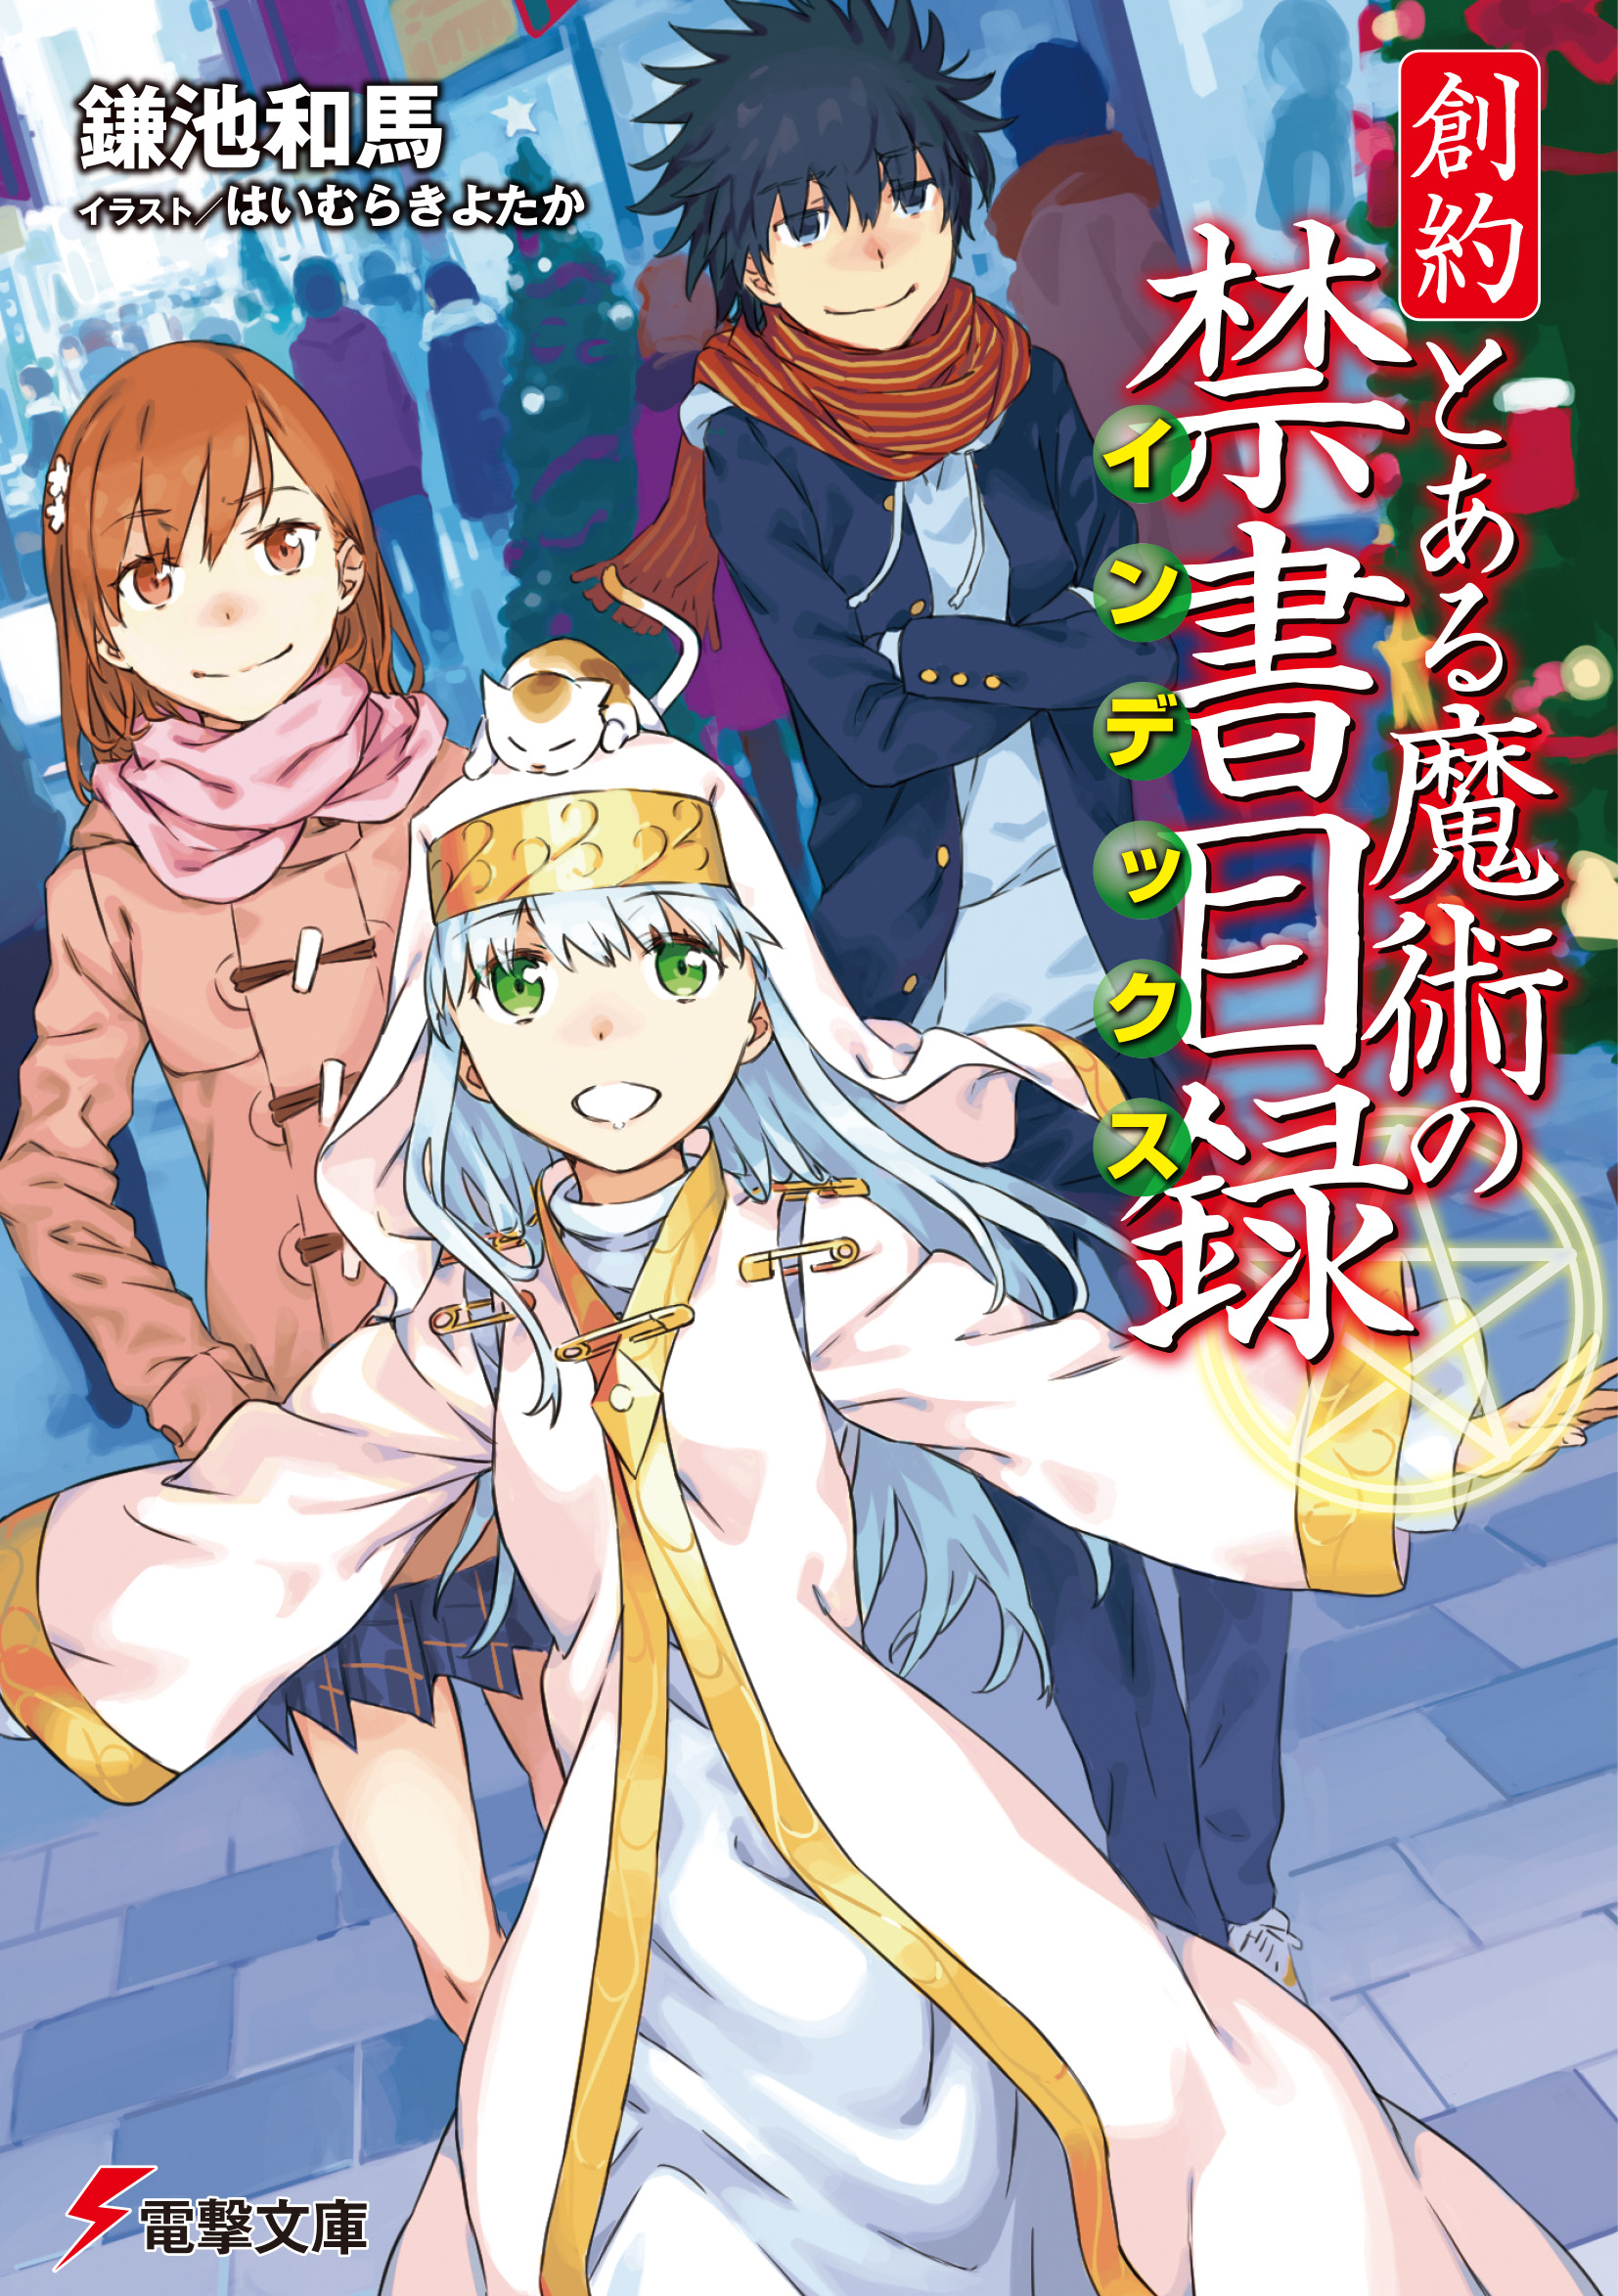 Winter 2016 Anime Based on Light Novels – English Light Novels